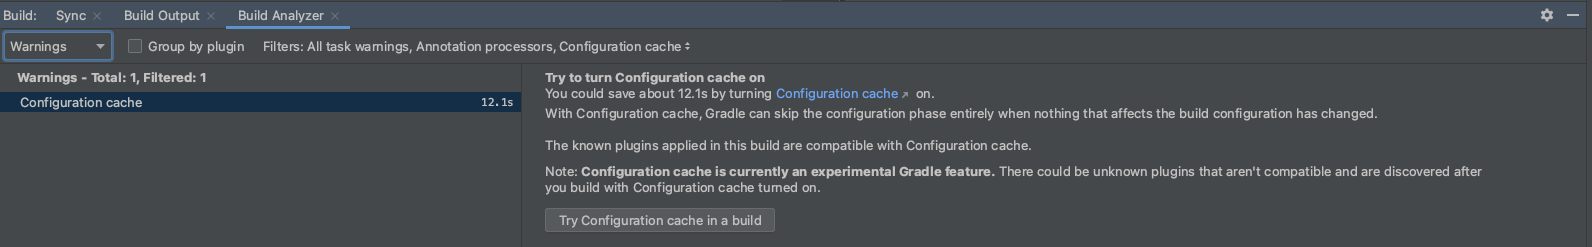 Configuração de informações de cache no Build Analyzer